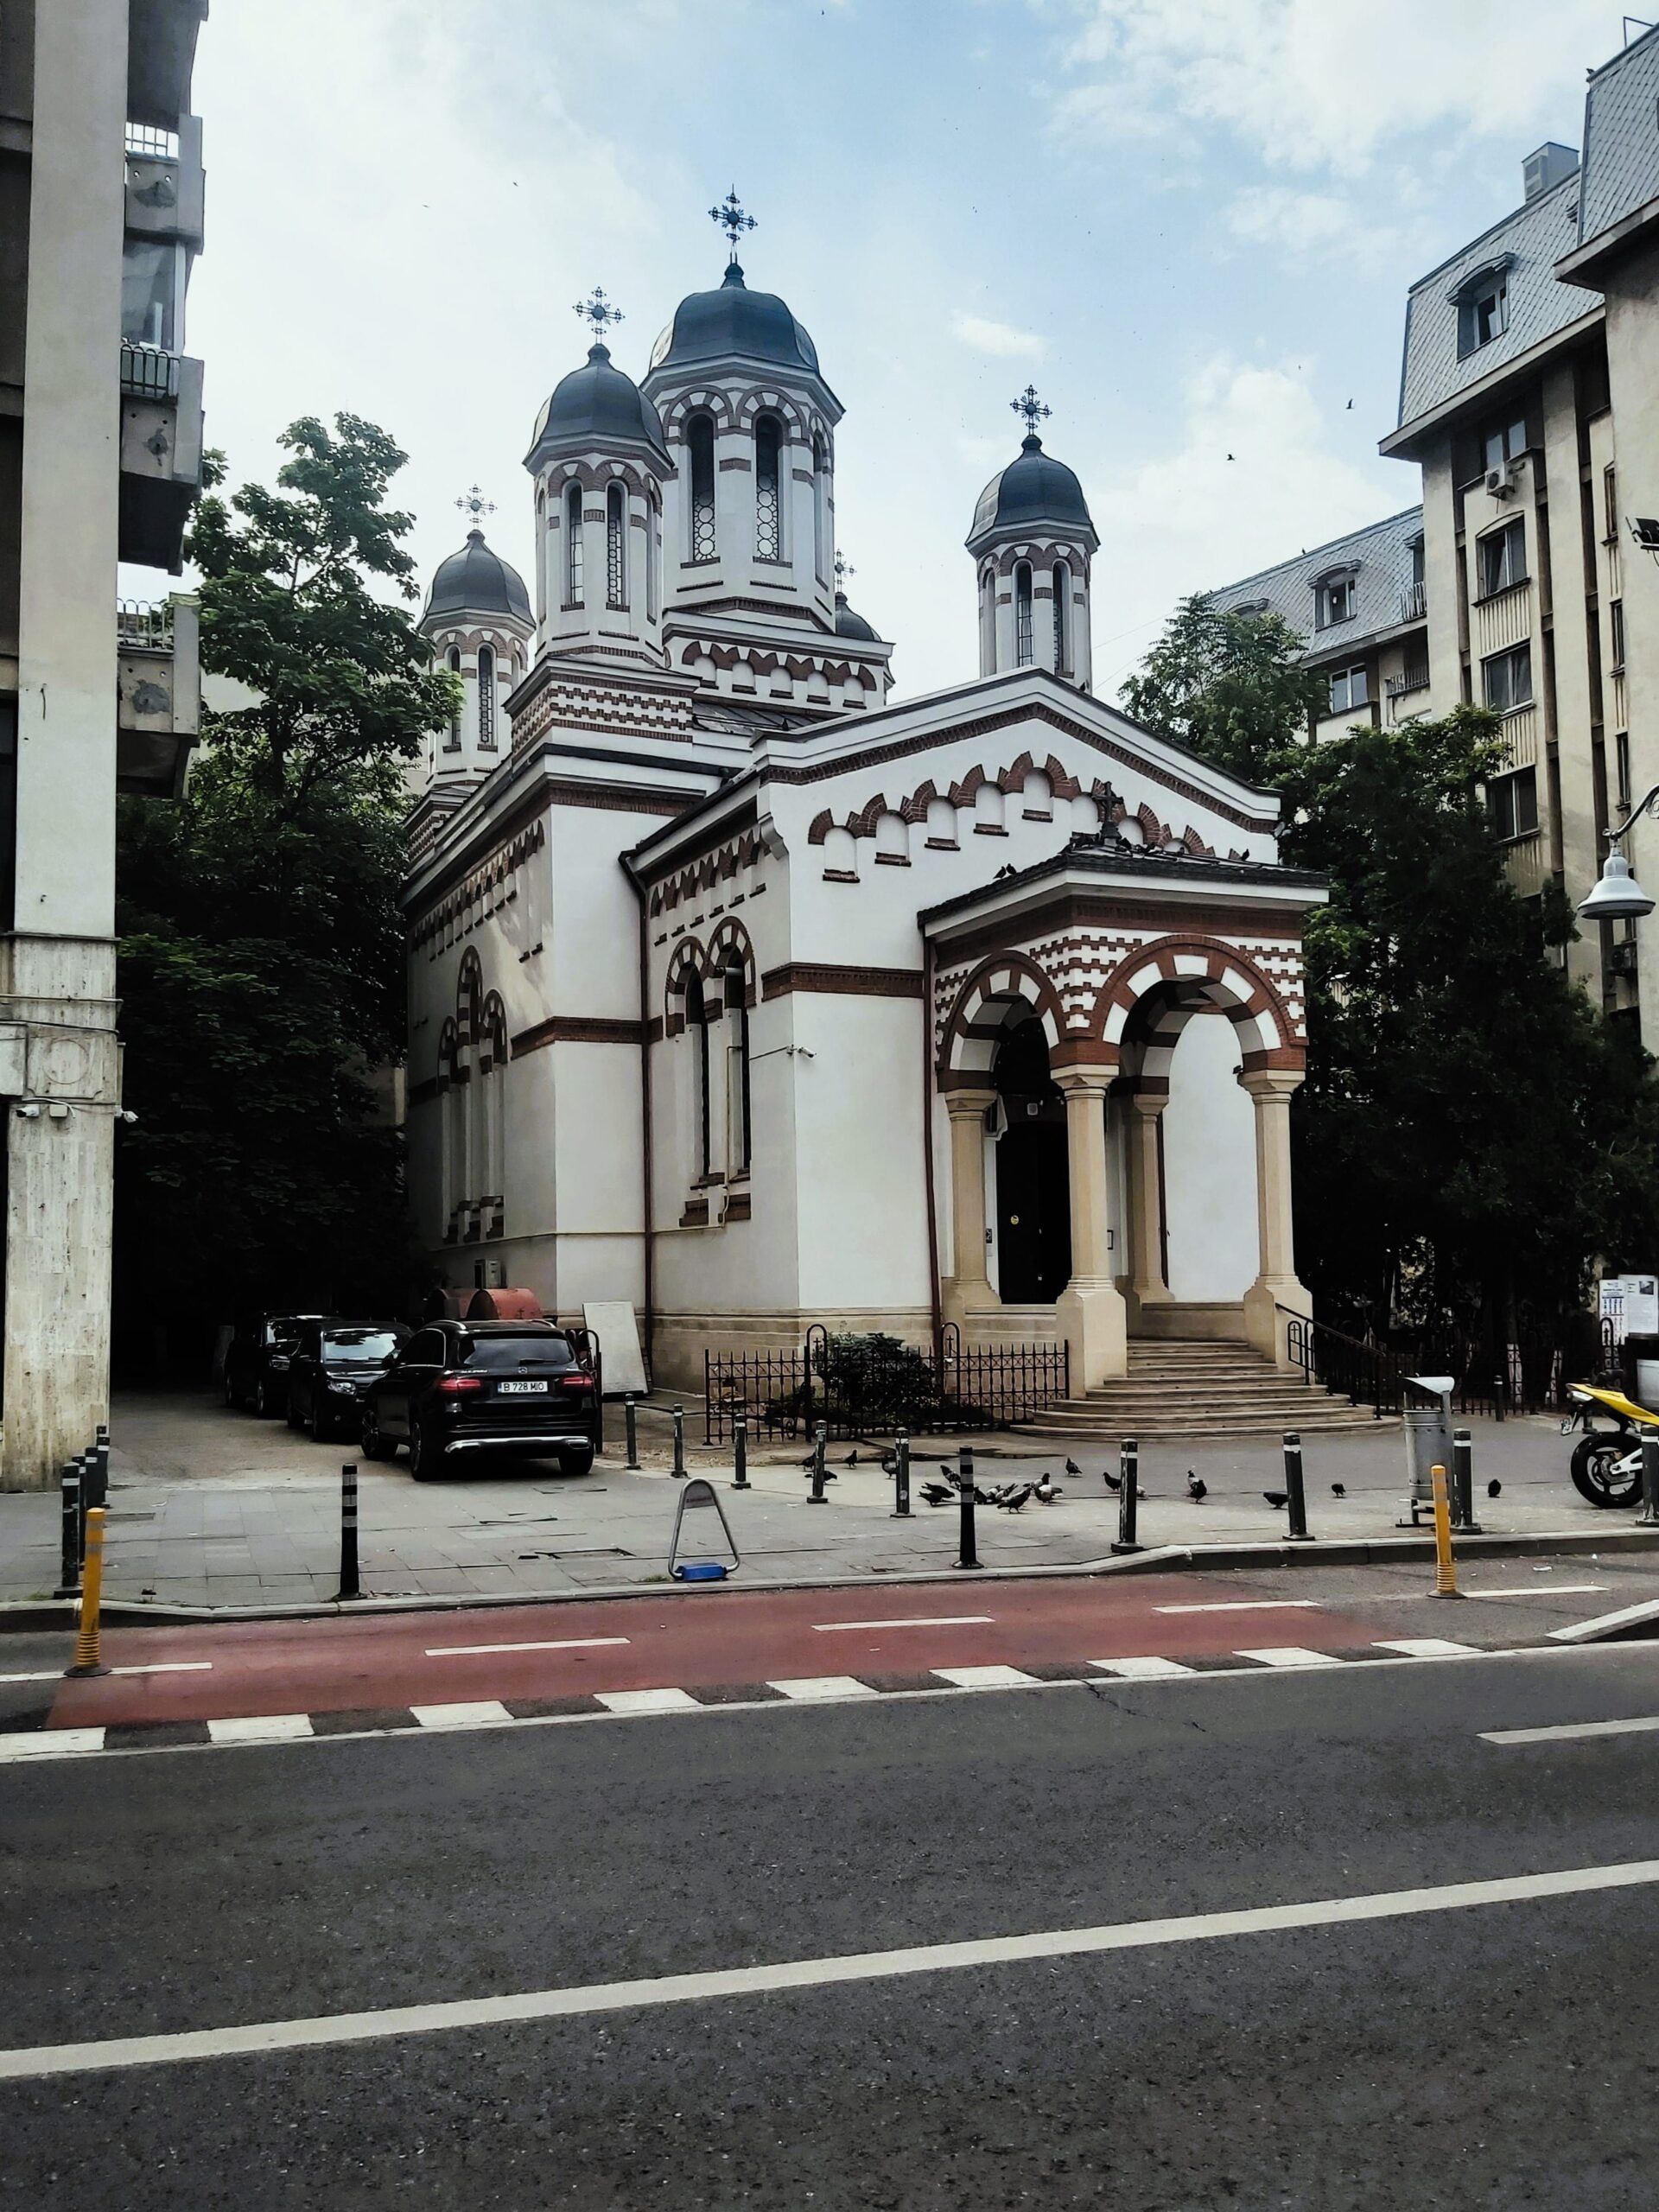 A small white and brown church in București, Romania